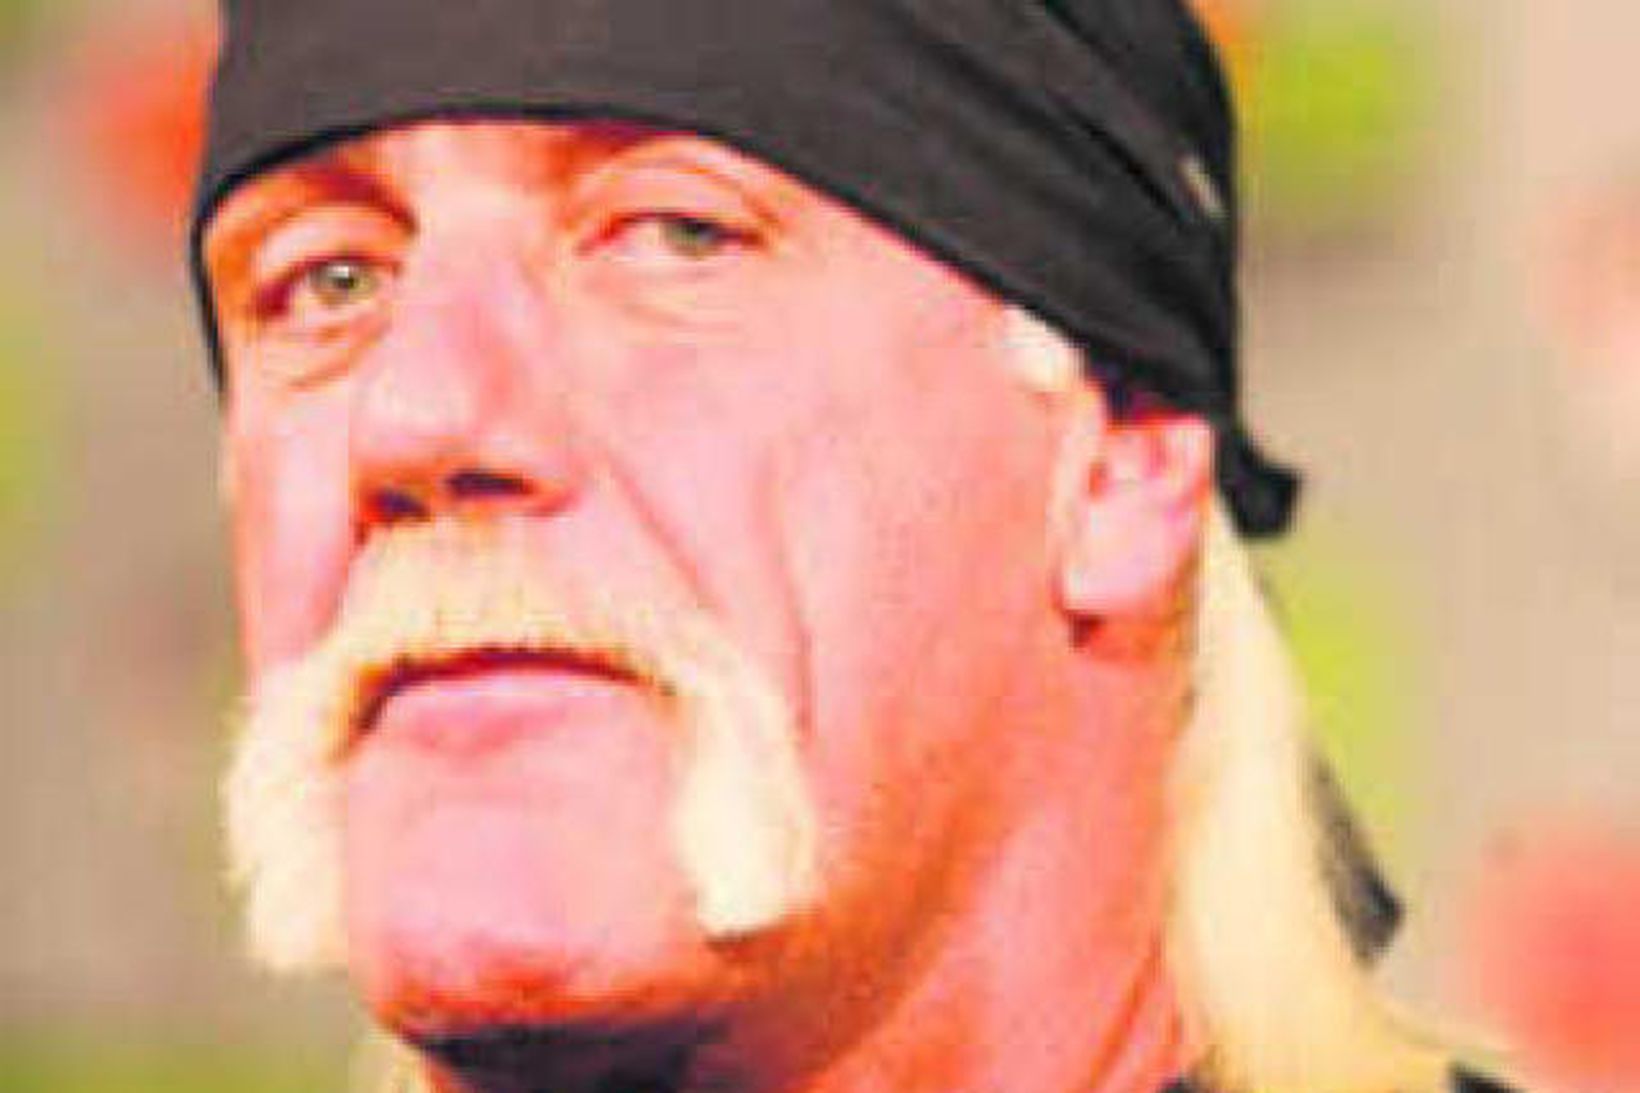 Hulk Hogan fékk 14,4 milljarða vegna myndbandsbirtingar Gawker.